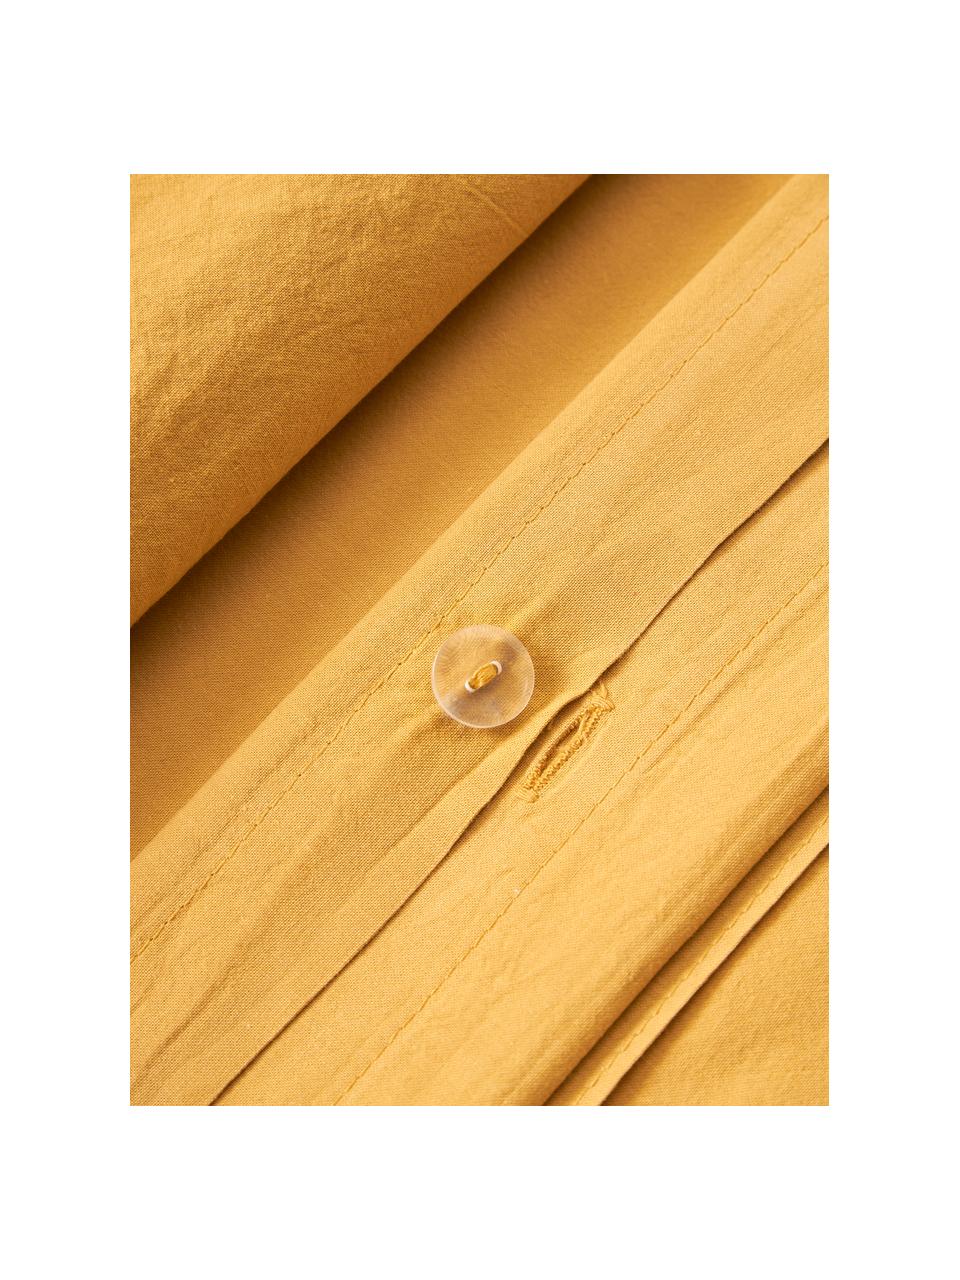 Gewaschener Baumwoll-Bettdeckenbezug Darlyn, 100 % Baumwolle
Fadendichte 150 TC, Standard Qualität

Bettwäsche aus Baumwolle fühlt sich auf der Haut angenehm weich an, nimmt Feuchtigkeit gut auf und eignet sich für Allergiker.

Durch ein besonderes Waschungsverfahren erhält der Stoff eine robuste, unregelmässige Stonewash-Optik. Ausserdem wird der Stoff dadurch weich und geschmeidig im Griff und erhält eine natürliche Knitter-Optik, die kein Bügeln erfordert und Gemütlichkeit ausstrahlt.

Das in diesem Produkt verwendete Material ist schadstoffgeprüft und zertifiziert nach STANDARD 100 by OEKO-TEX®, 4265CIT, CITEVE., Senfgelb, B 200 x L 200 cm